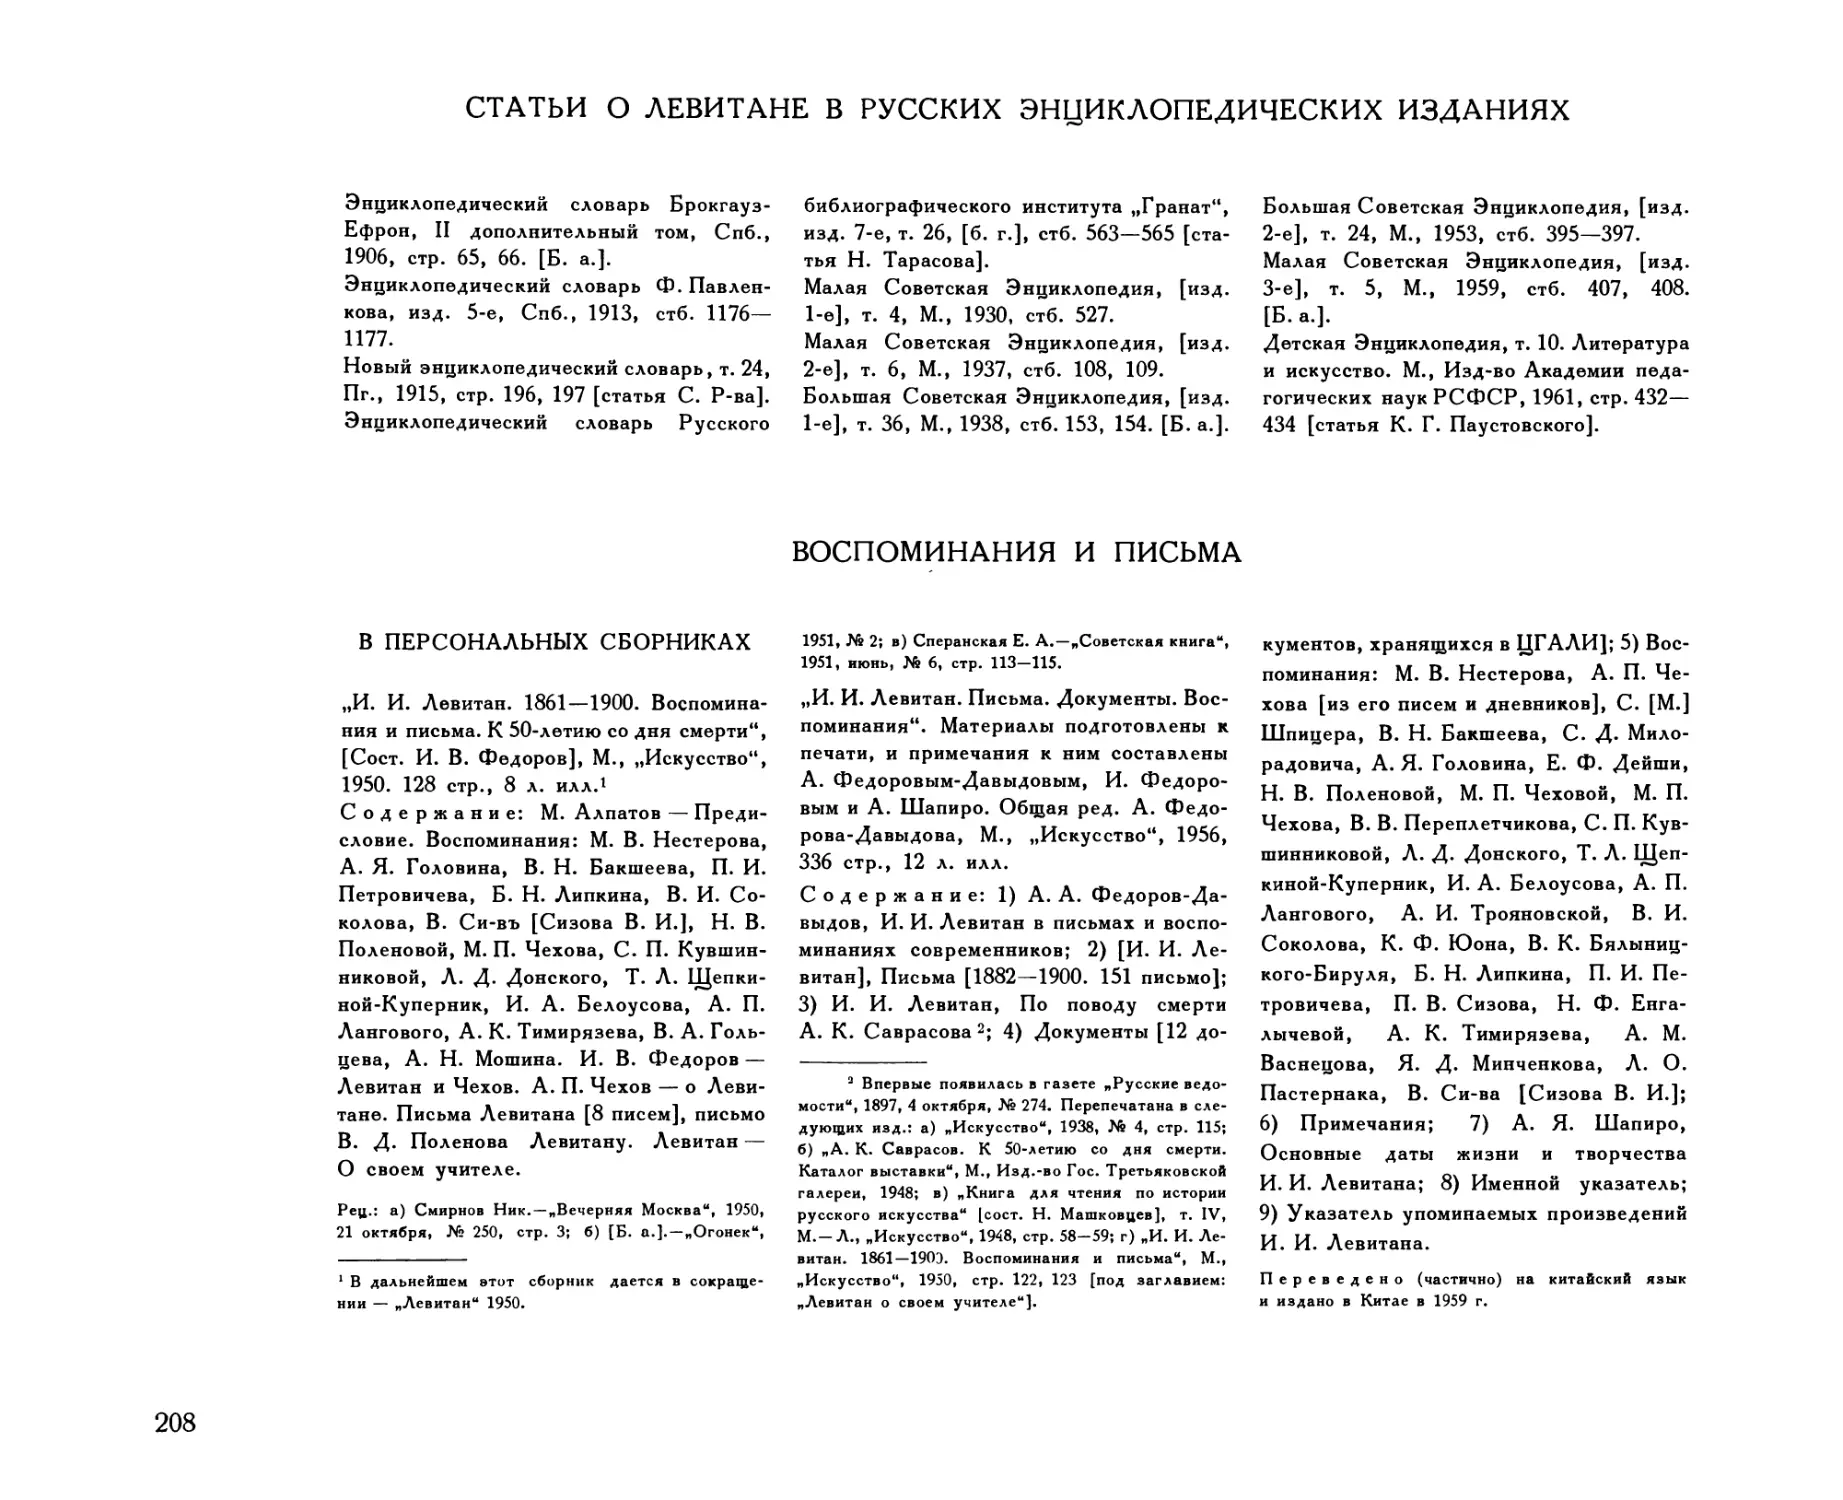 Статьи о Левитане в русских энциклопедических изданиях
Воспоминания и письма